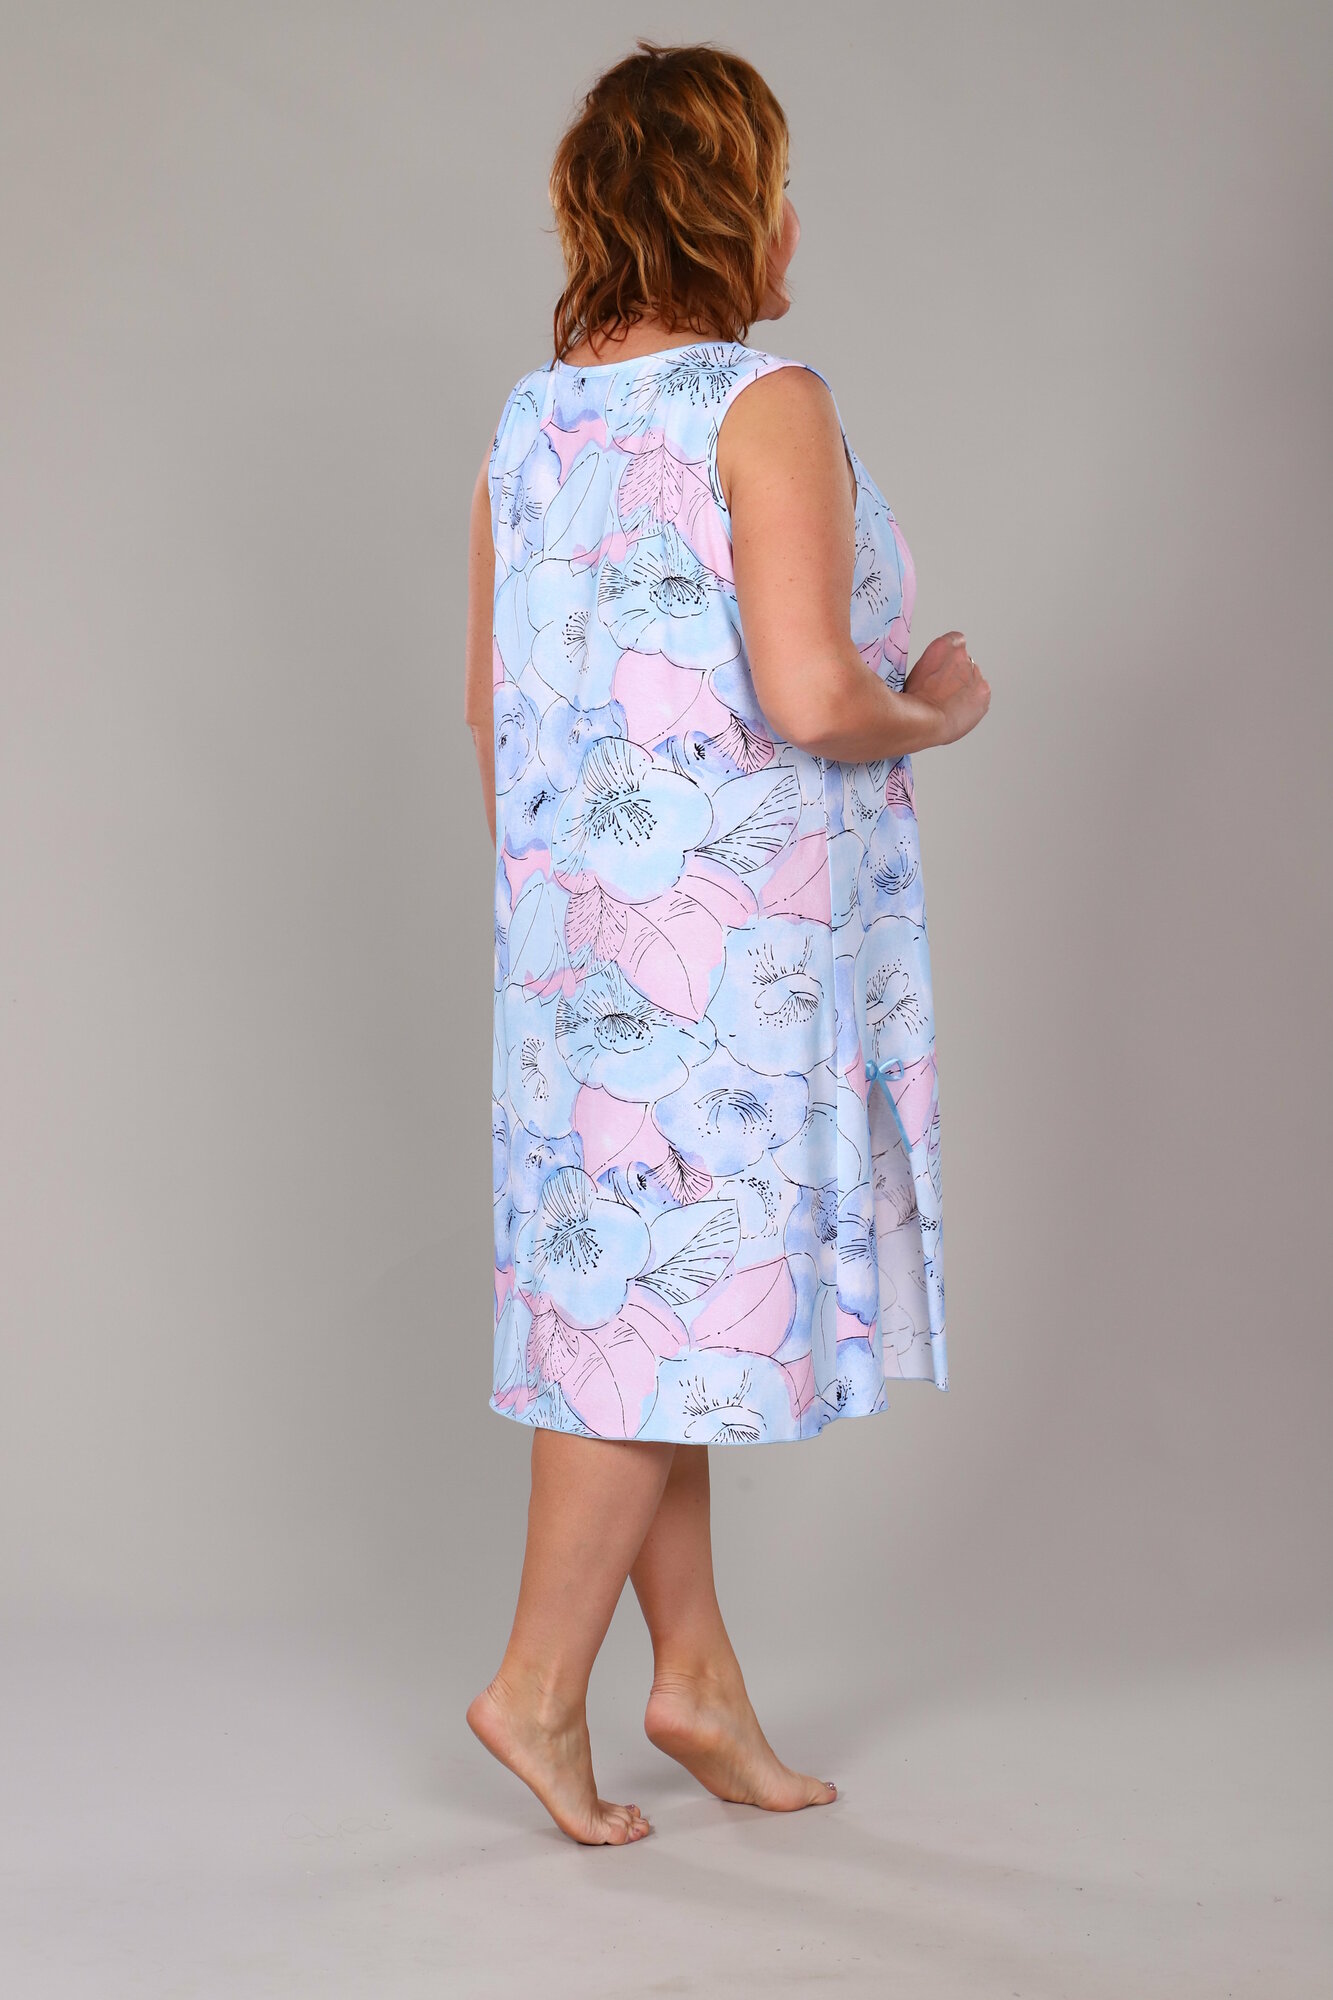 Сорочка IvCapriz средней длины, без рукава, без карманов, трикотажная, банный, размер 50, голубой, розовый - фотография № 4